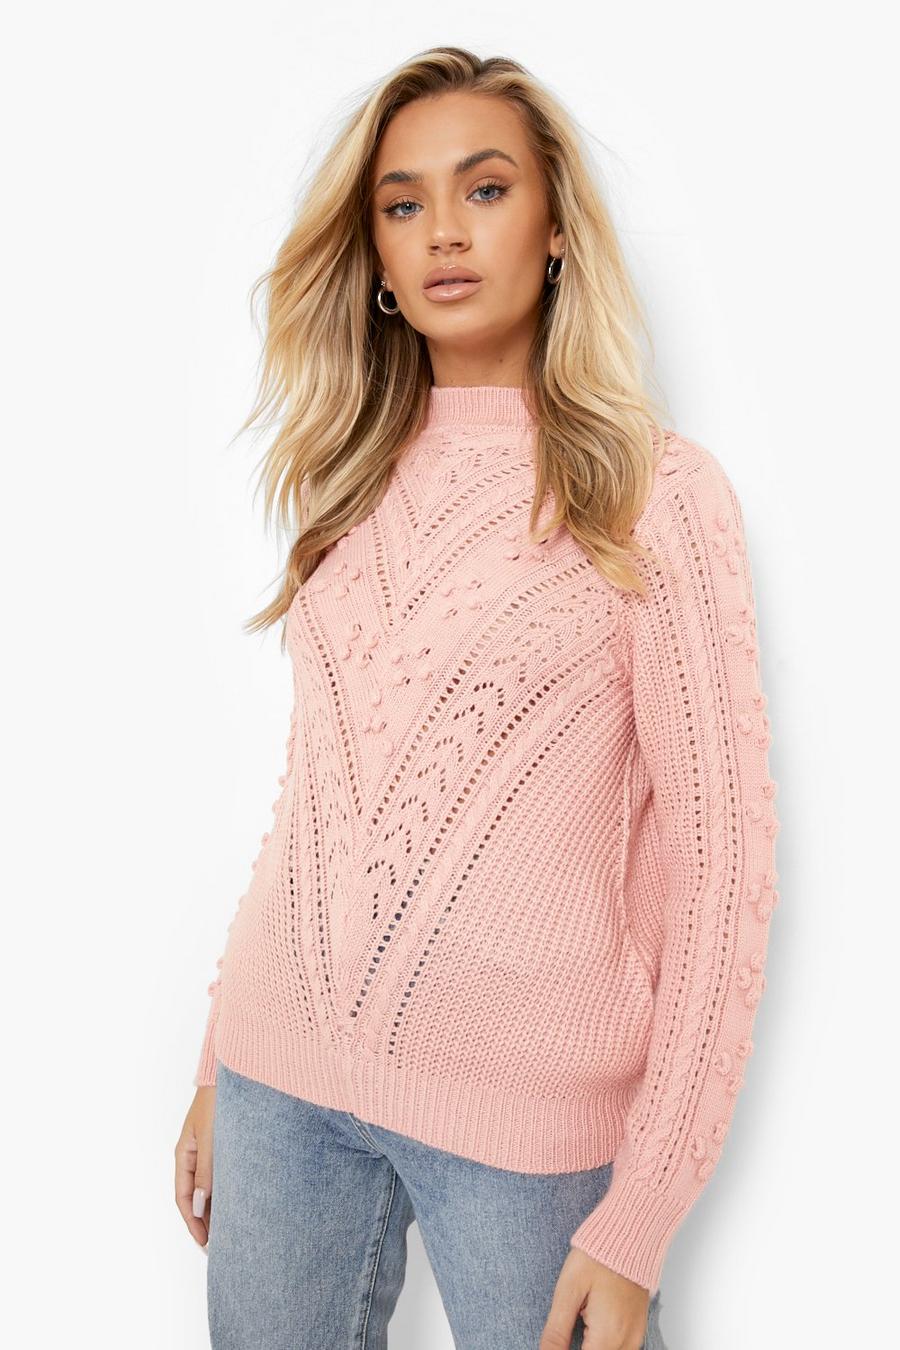 Blush pink Mixed Stitch Sweater